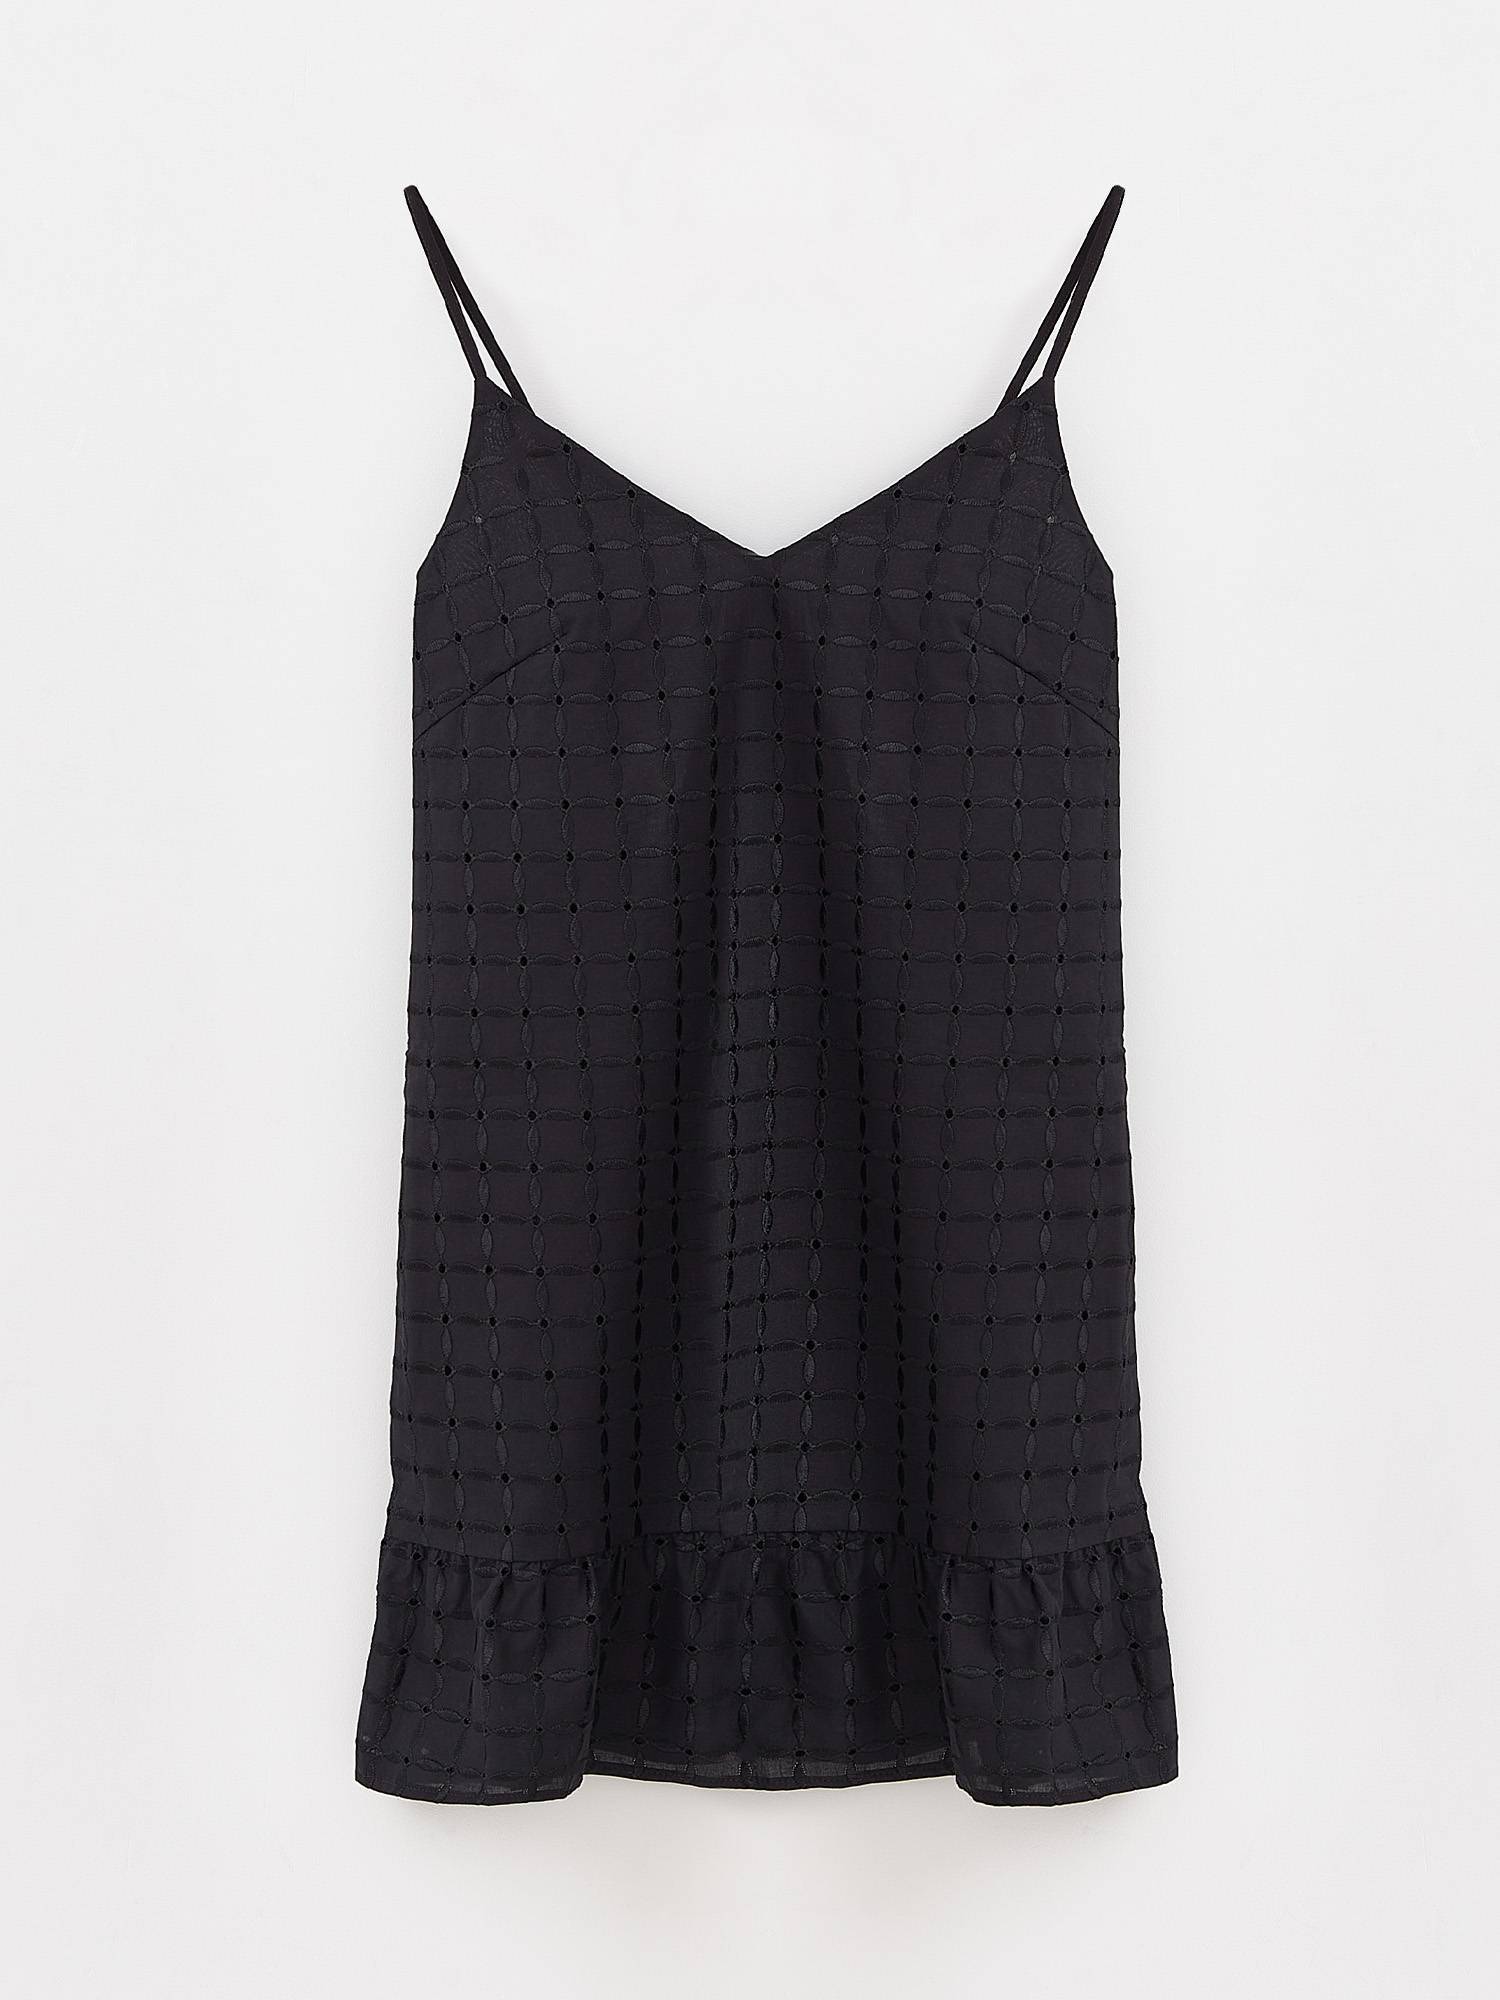 Легкое платье с вышивкой ришелье и боковыми карманами LPL 1589 Conte ⭐️, цвет black, размер 170-84-90/xs - фото 1